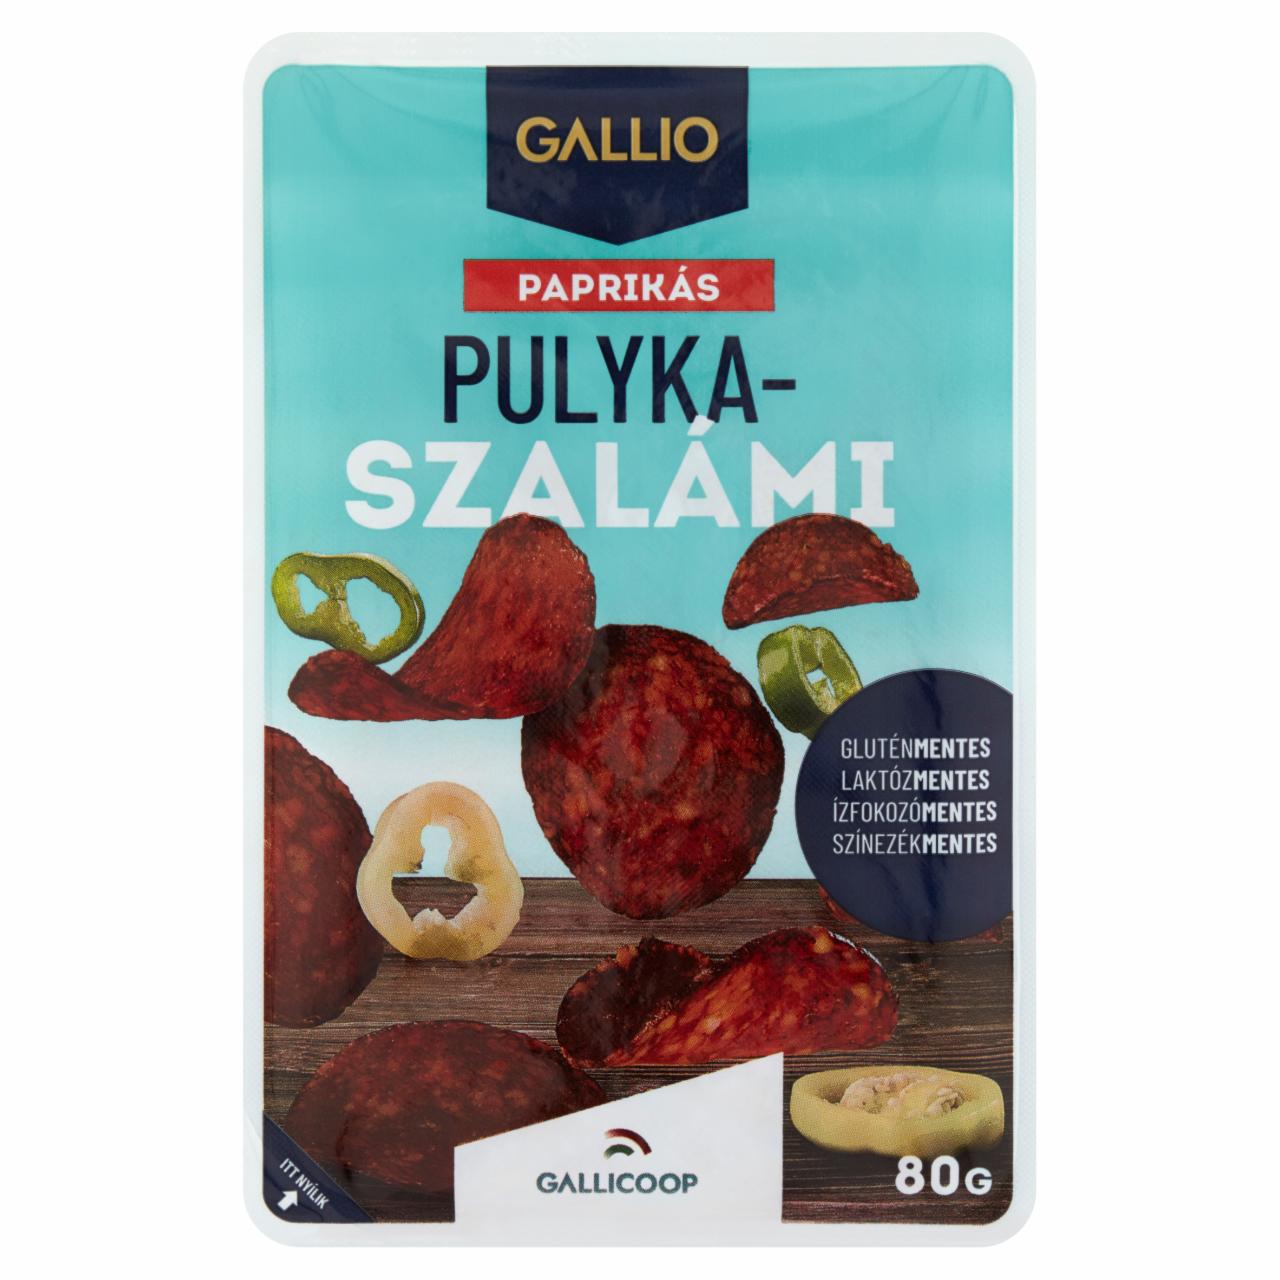 Képek - Gallio szeletelt paprikás pulyka szalámi 80 g